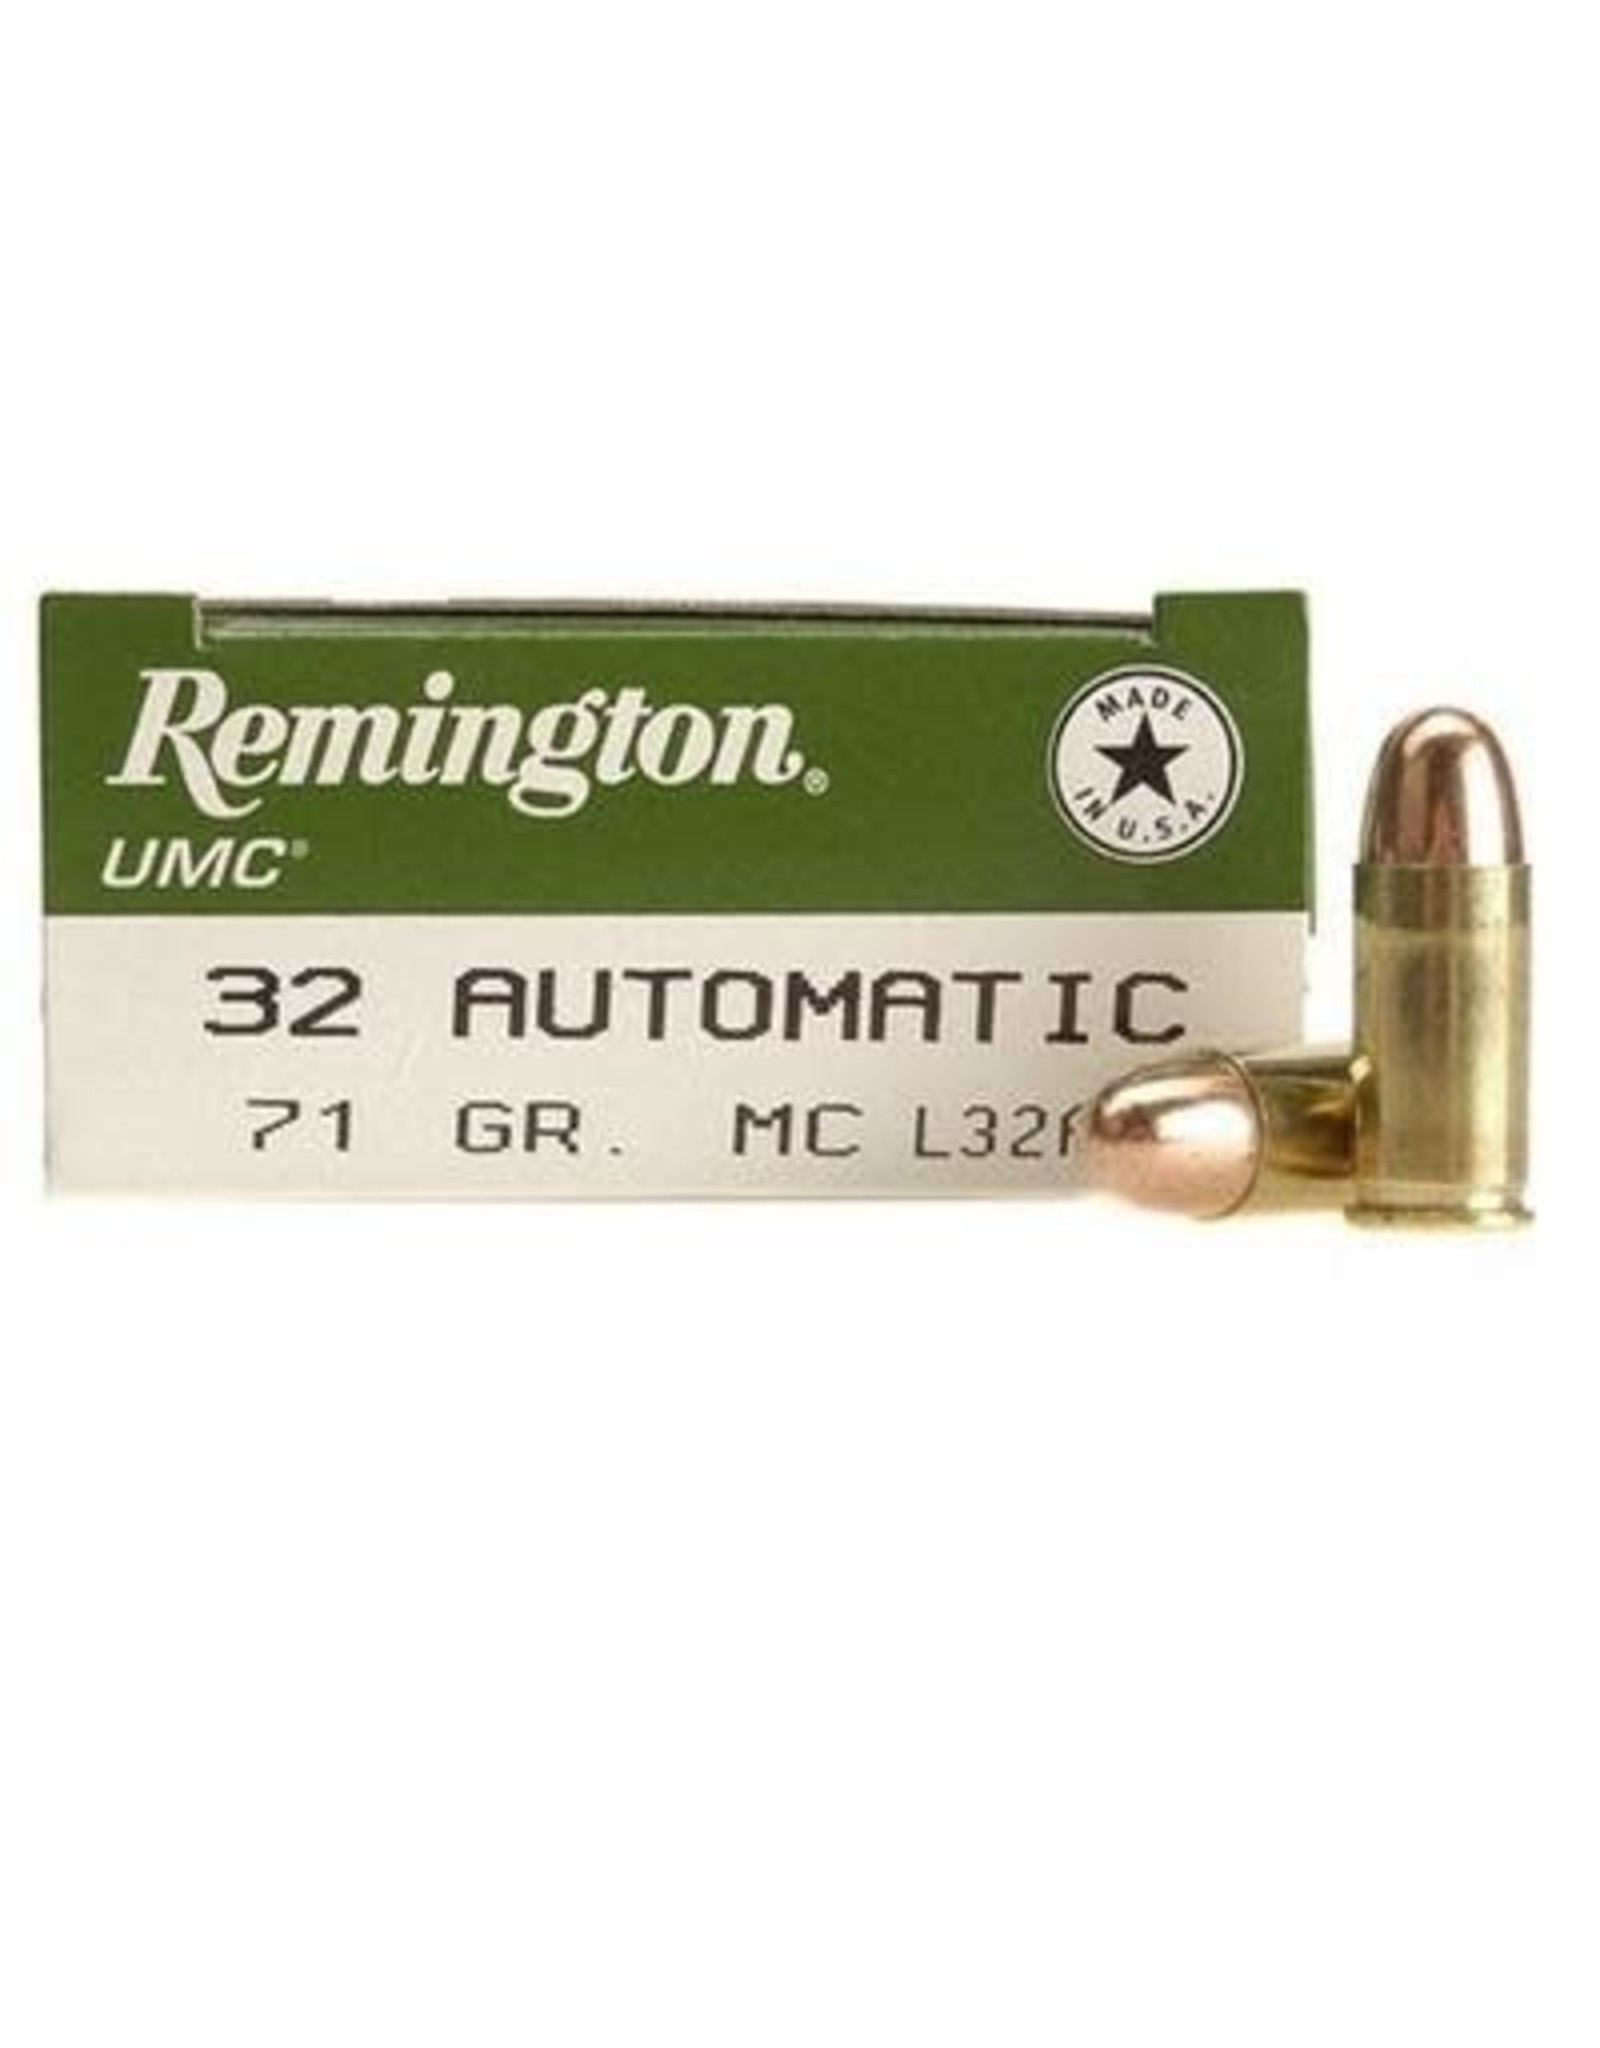 REMINGTON AMMUNITION Remington UMC .32 ACP 71 Gr FMJ 905 FPS - 50 Count